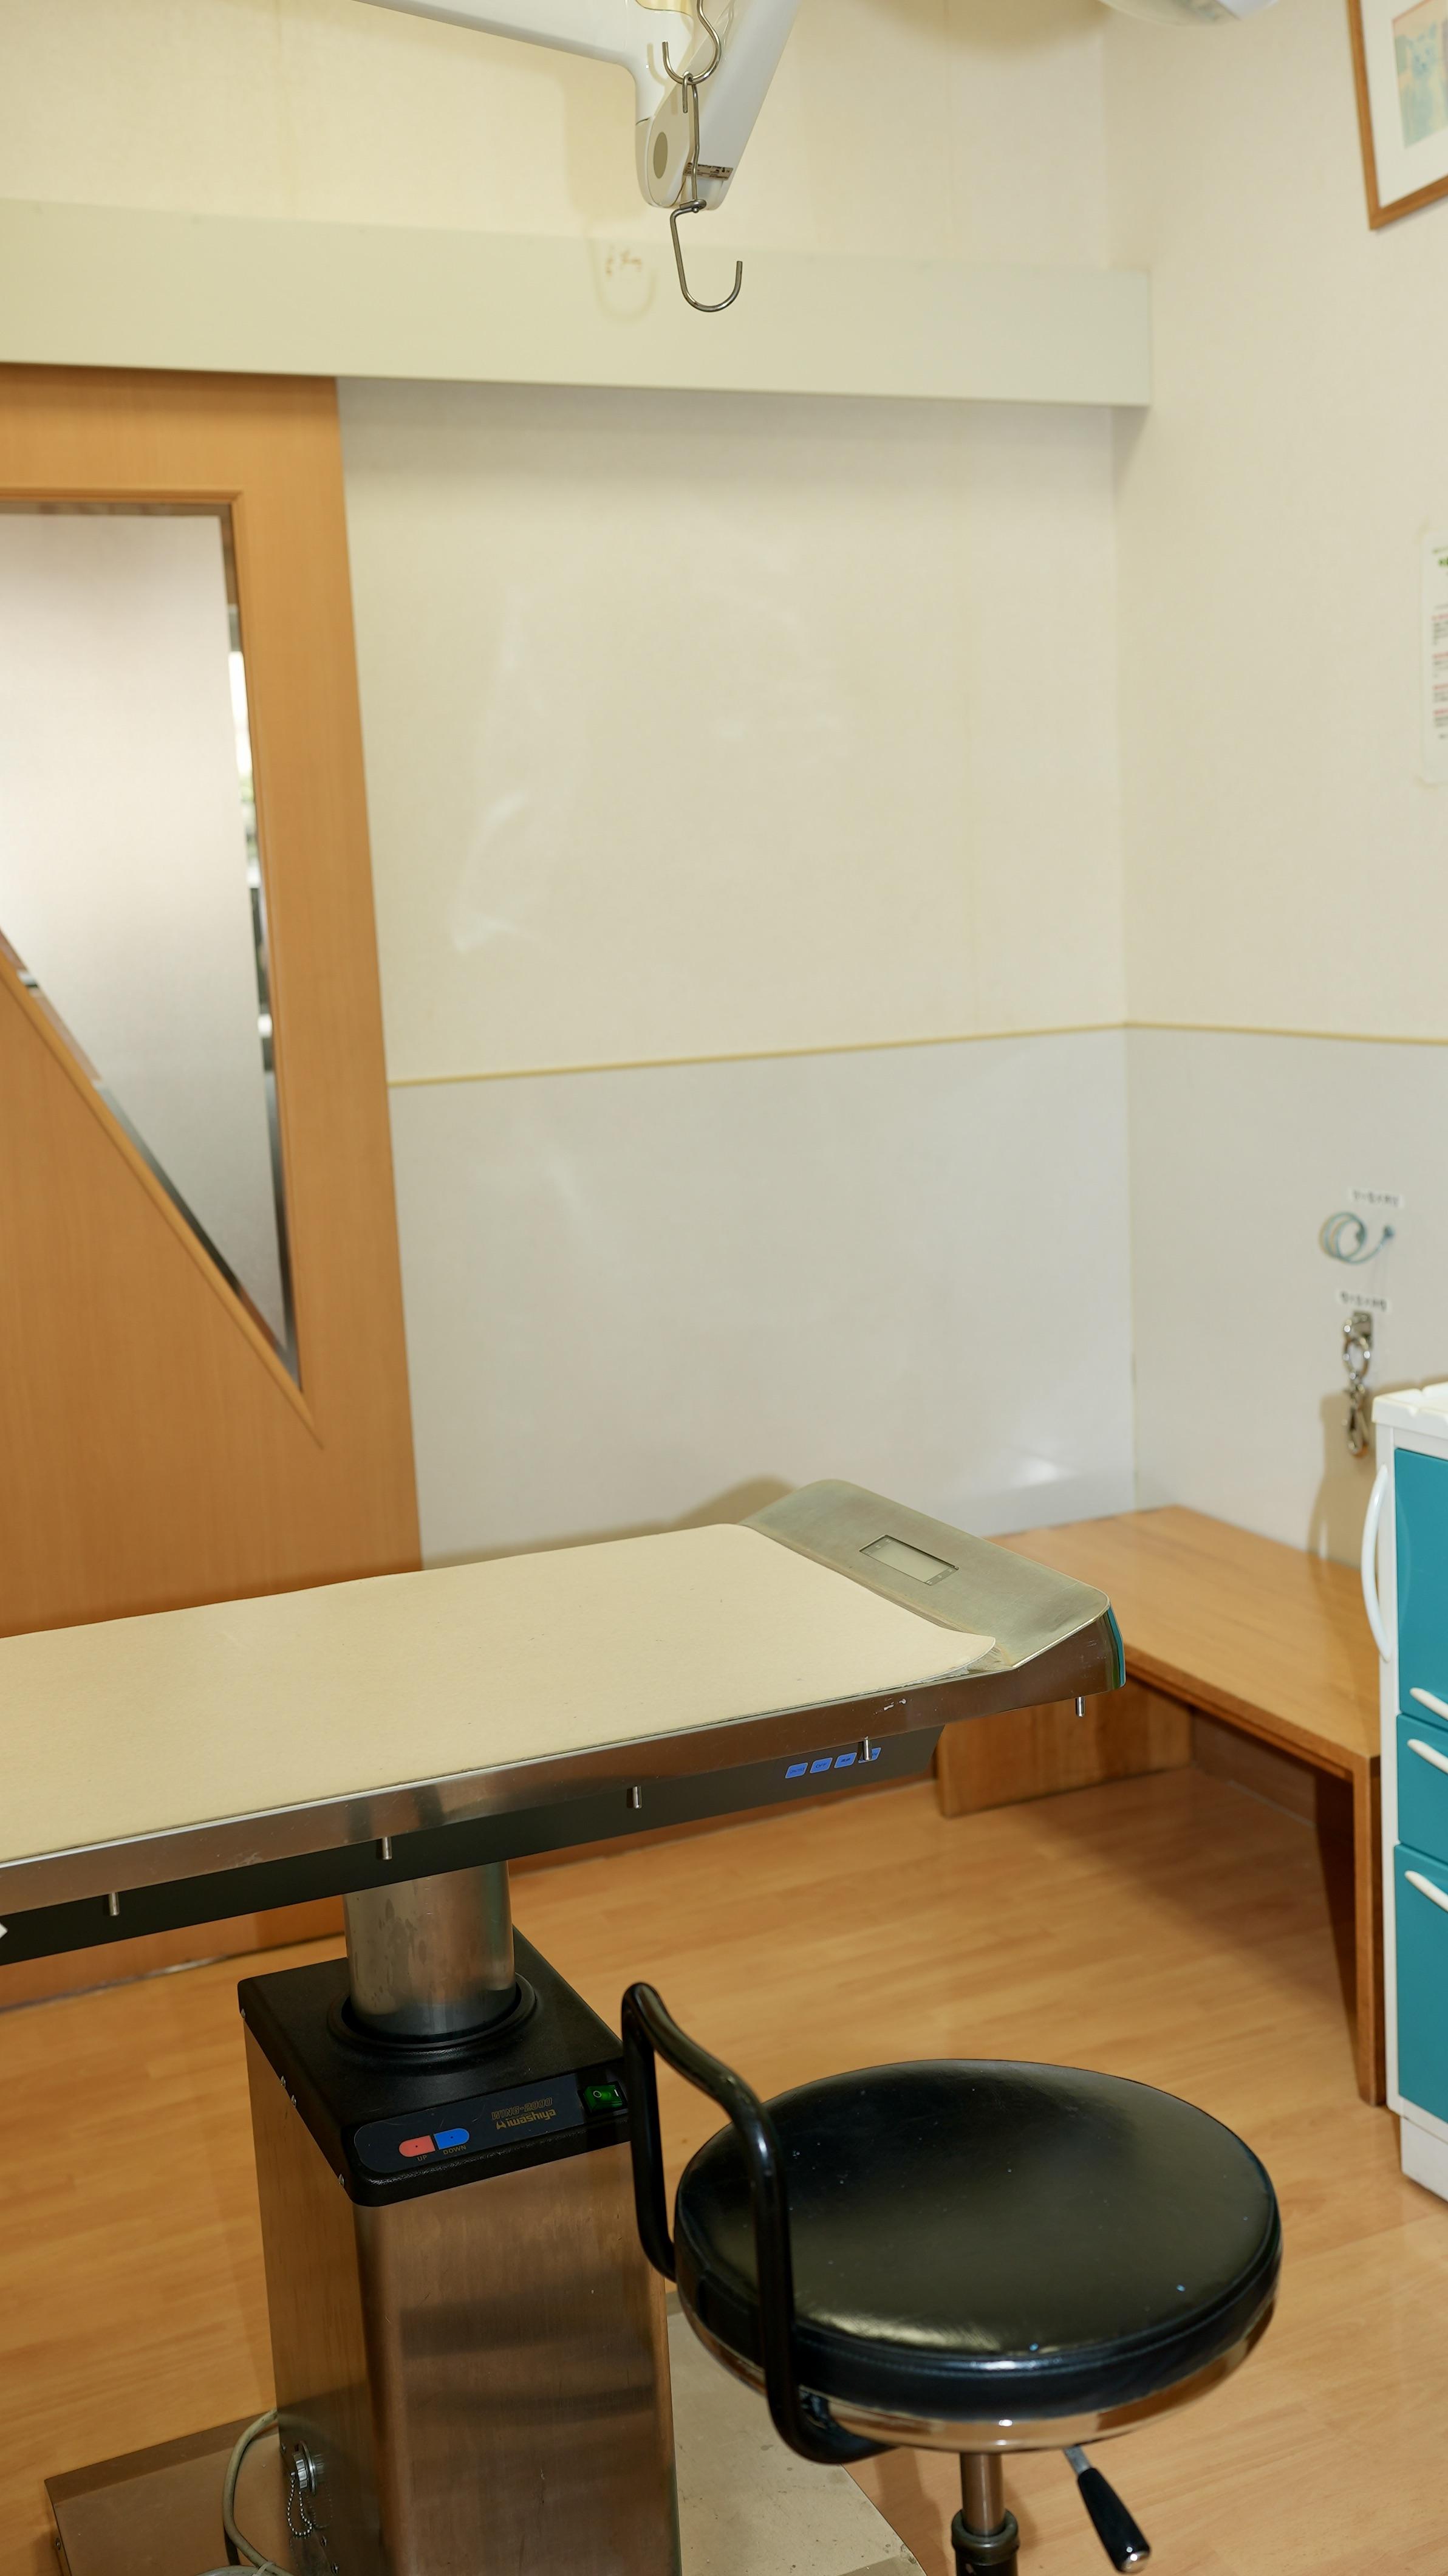 第2診察室。小型犬や猫はこちらの診察室を使用することもあります。各診察室毎に設置されている手洗い場が便利です。